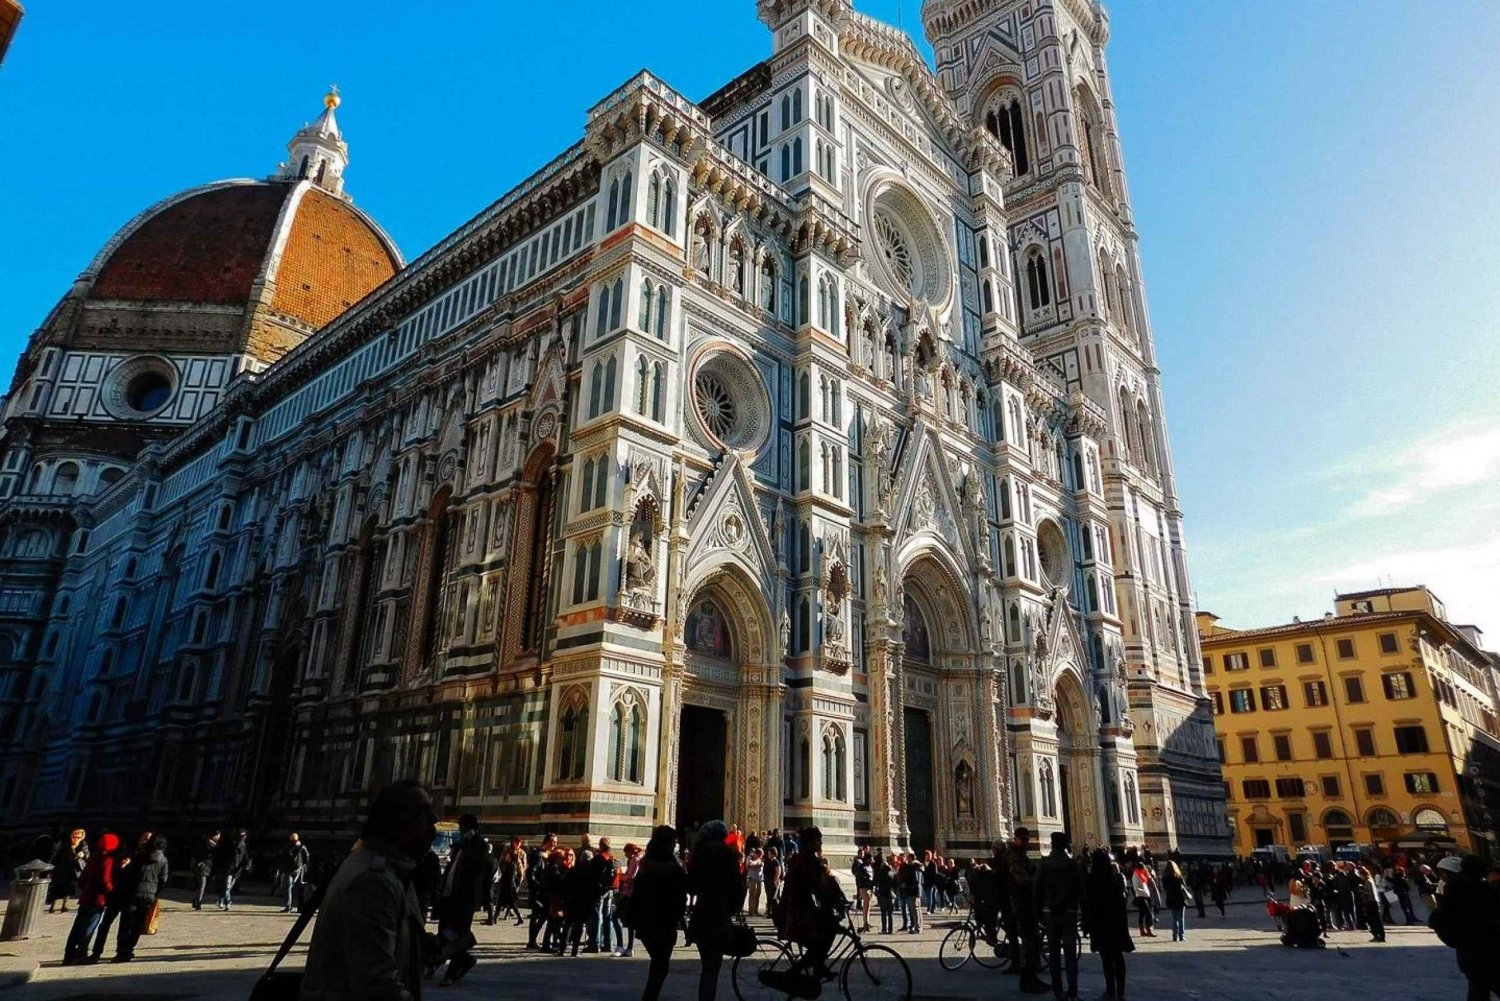 Firenze: Duomo Santa Maria del Fiore Katedral Guidet tur